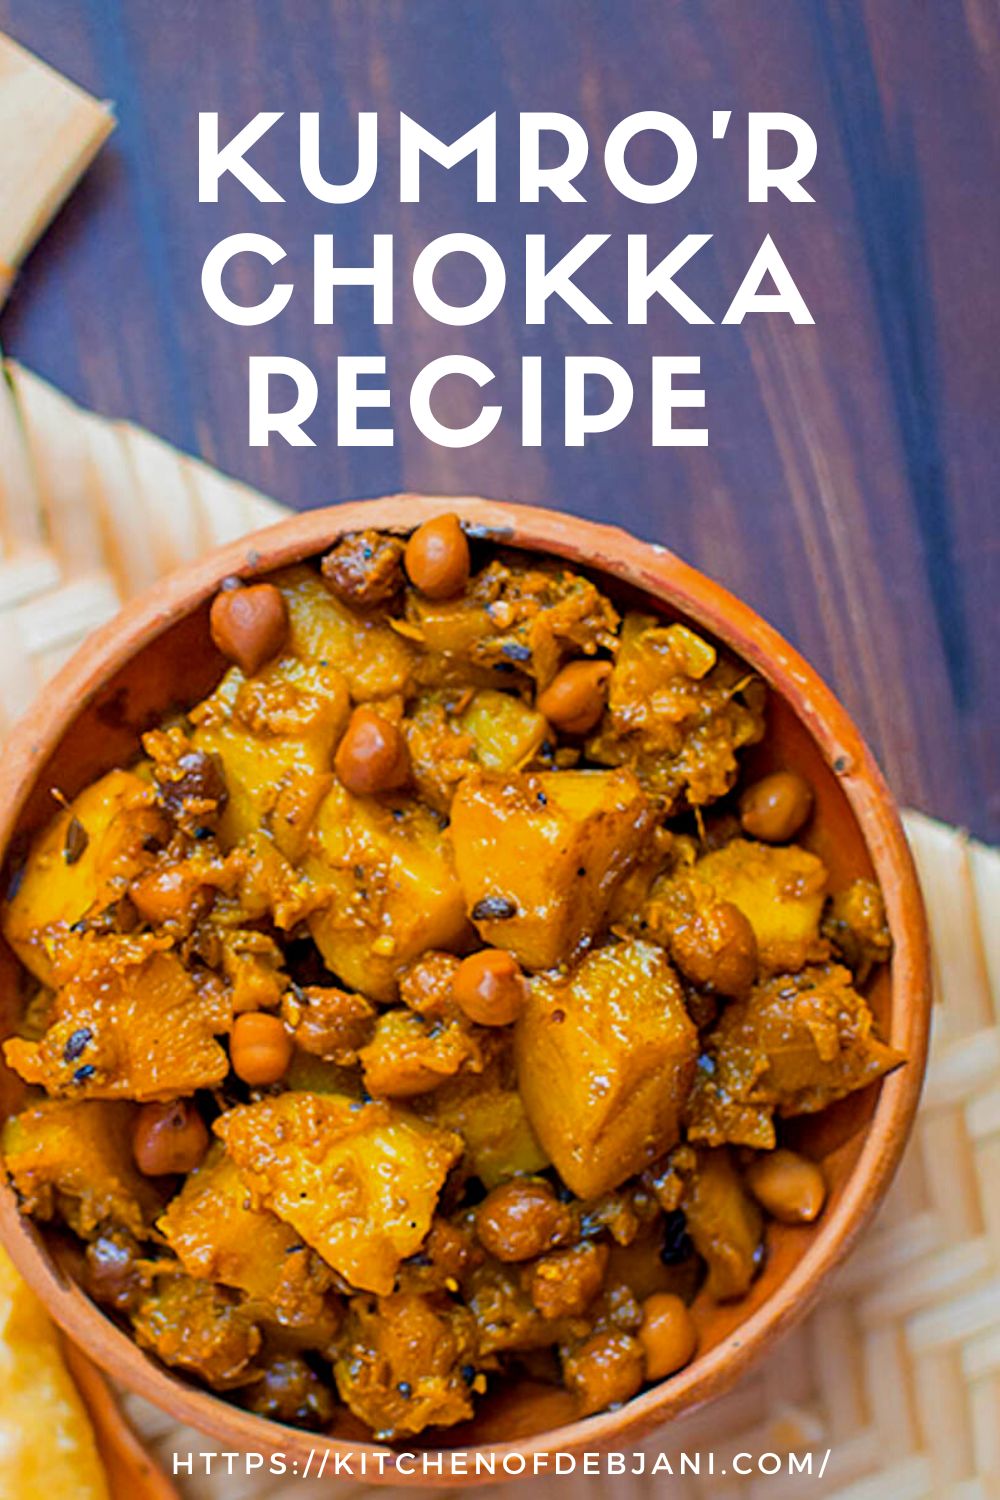 5Kumro'r Chokka Recipe Photo Food Pinterest Pin